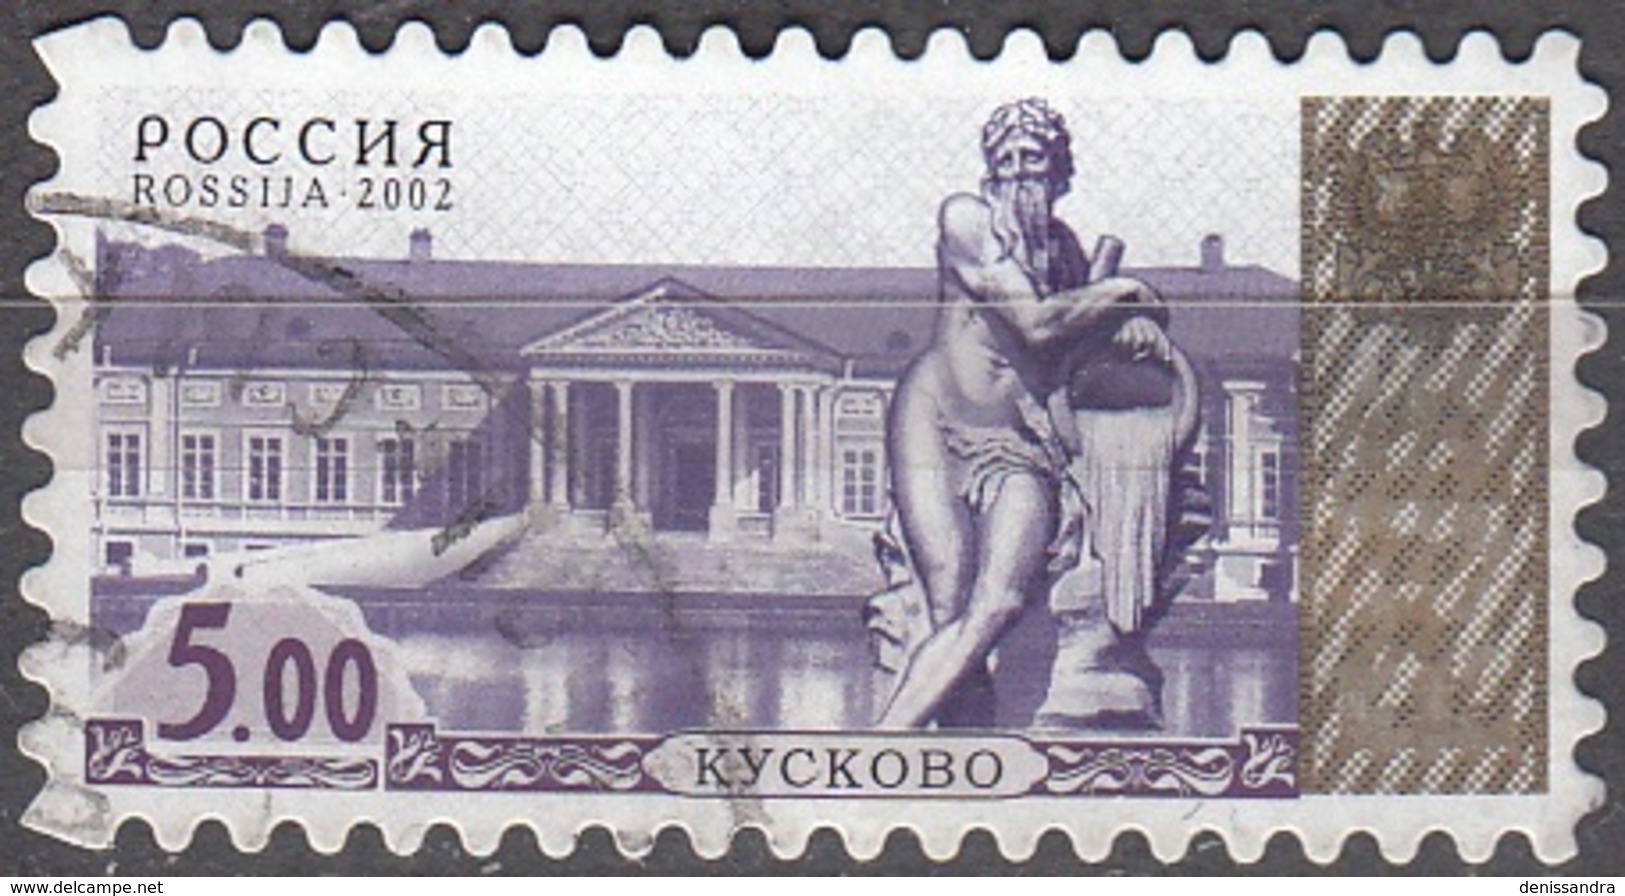 Rossija 2002 Michel 1049 O Cote (2008) 0.40 Euro Moscou Sculpture Cachet Rond - Oblitérés